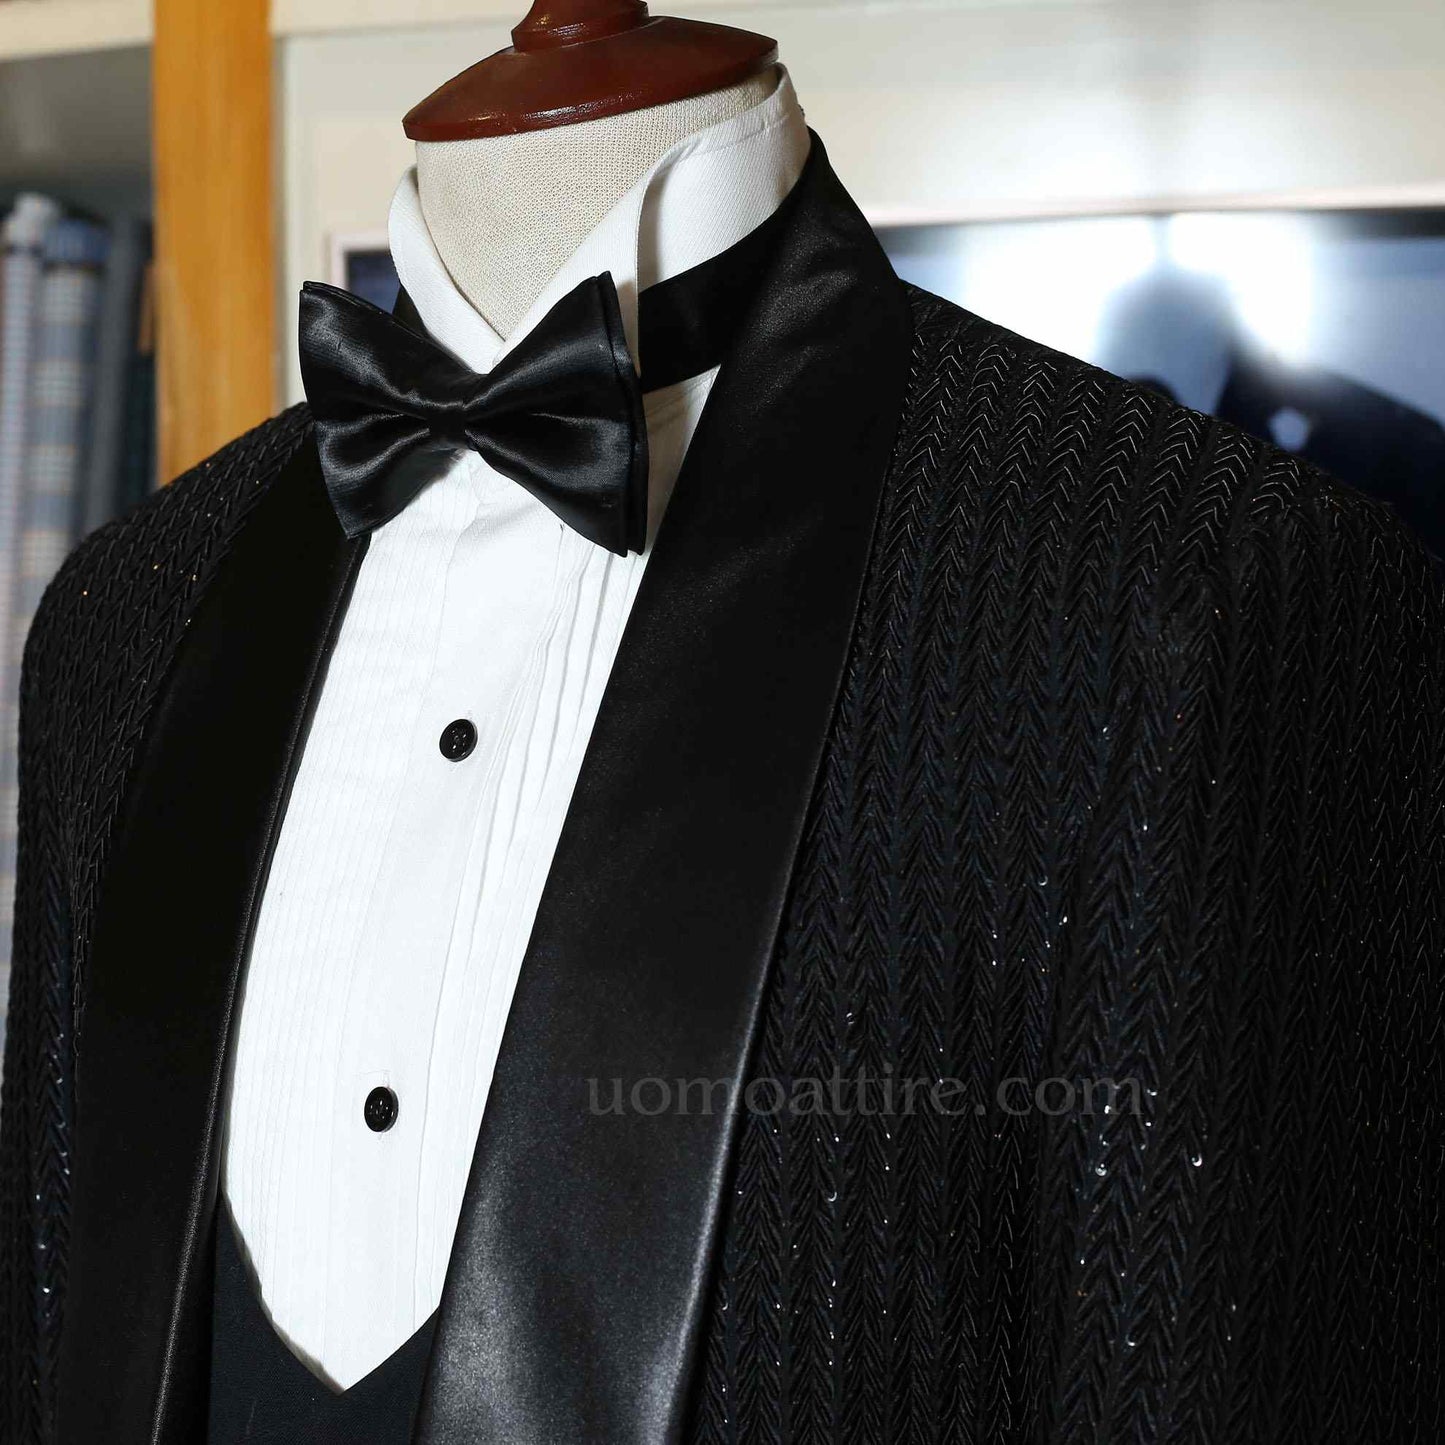 The Perfectly Elegant Men's Black Tuxedo 3-Piece Suit – Uomo Attire